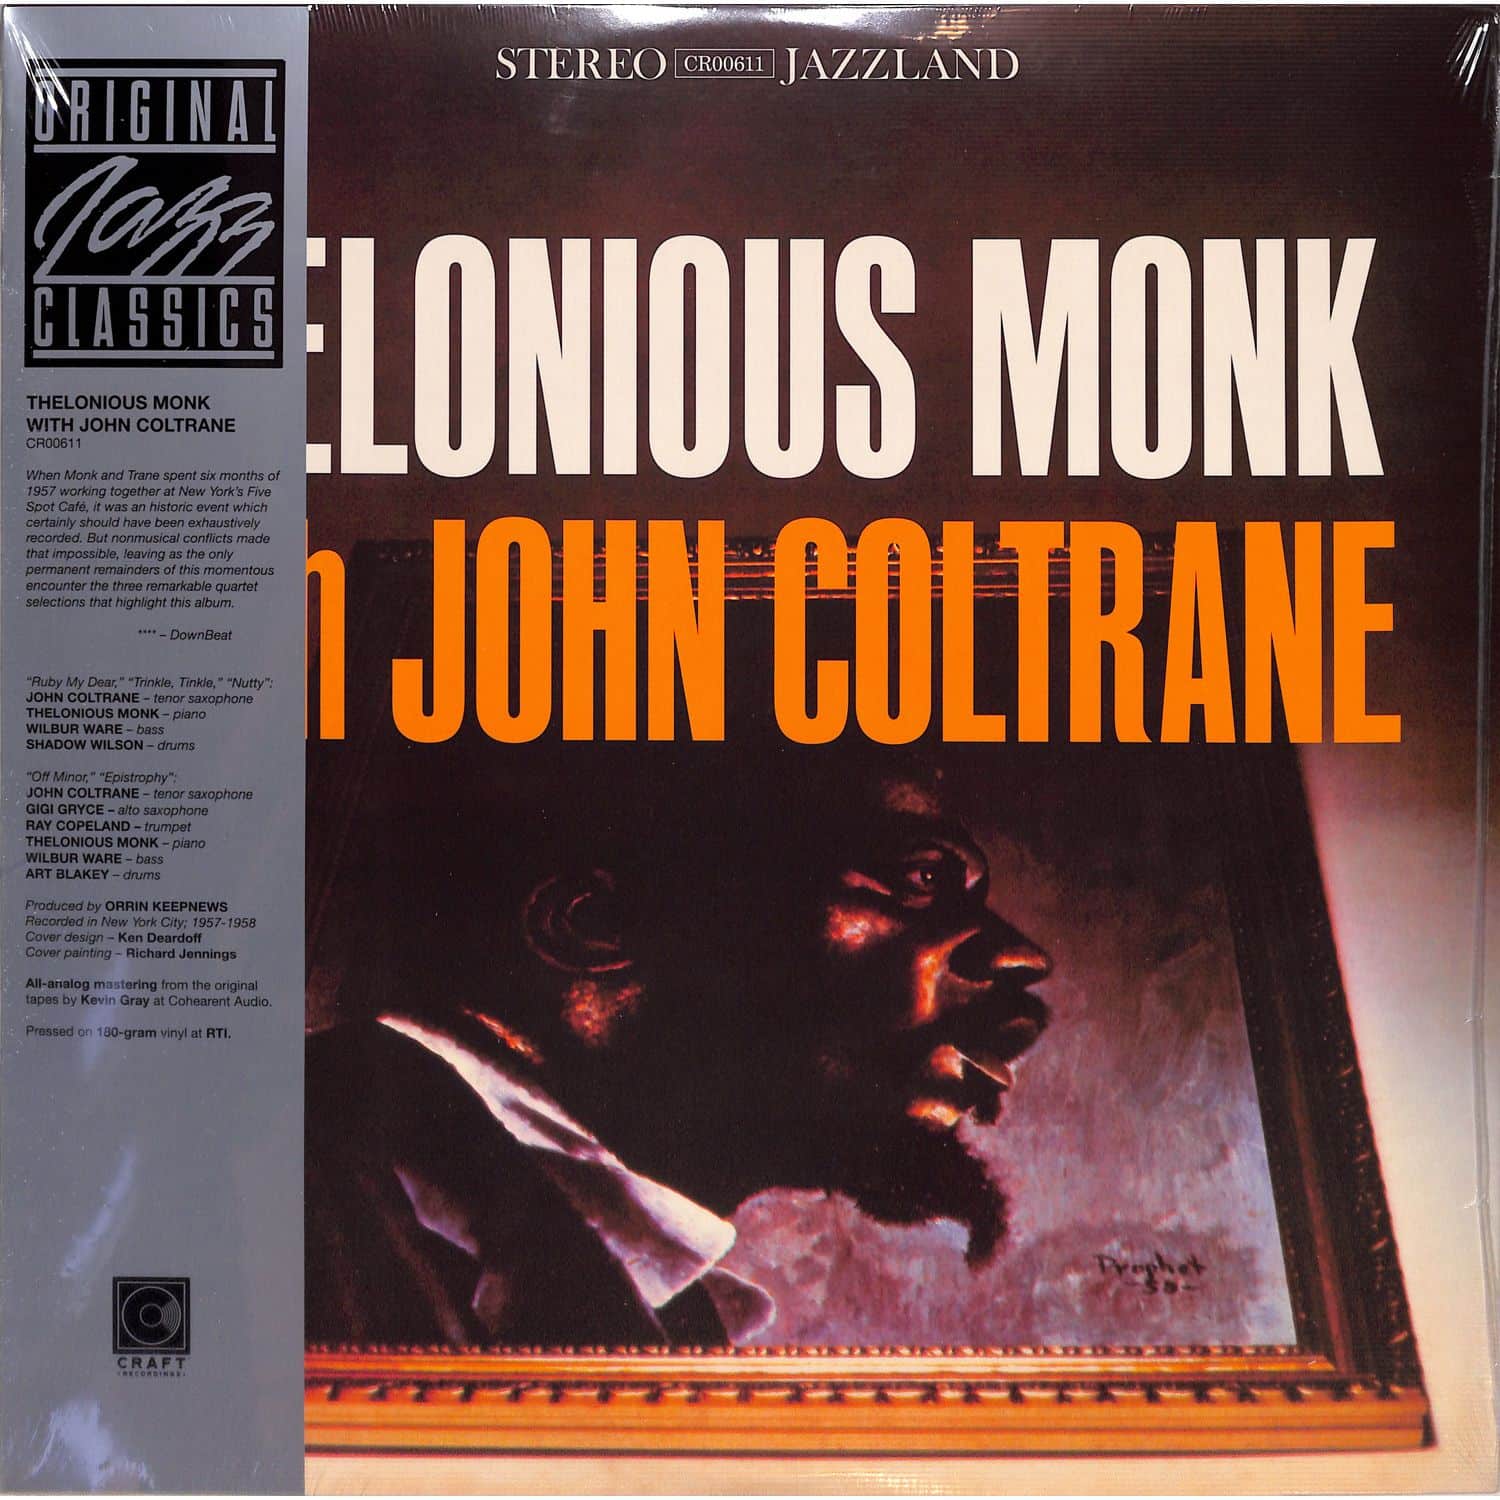 Thelonious Monk & John Coltrane - THELONIOUS MONK WITH JOHN COLTRANE 